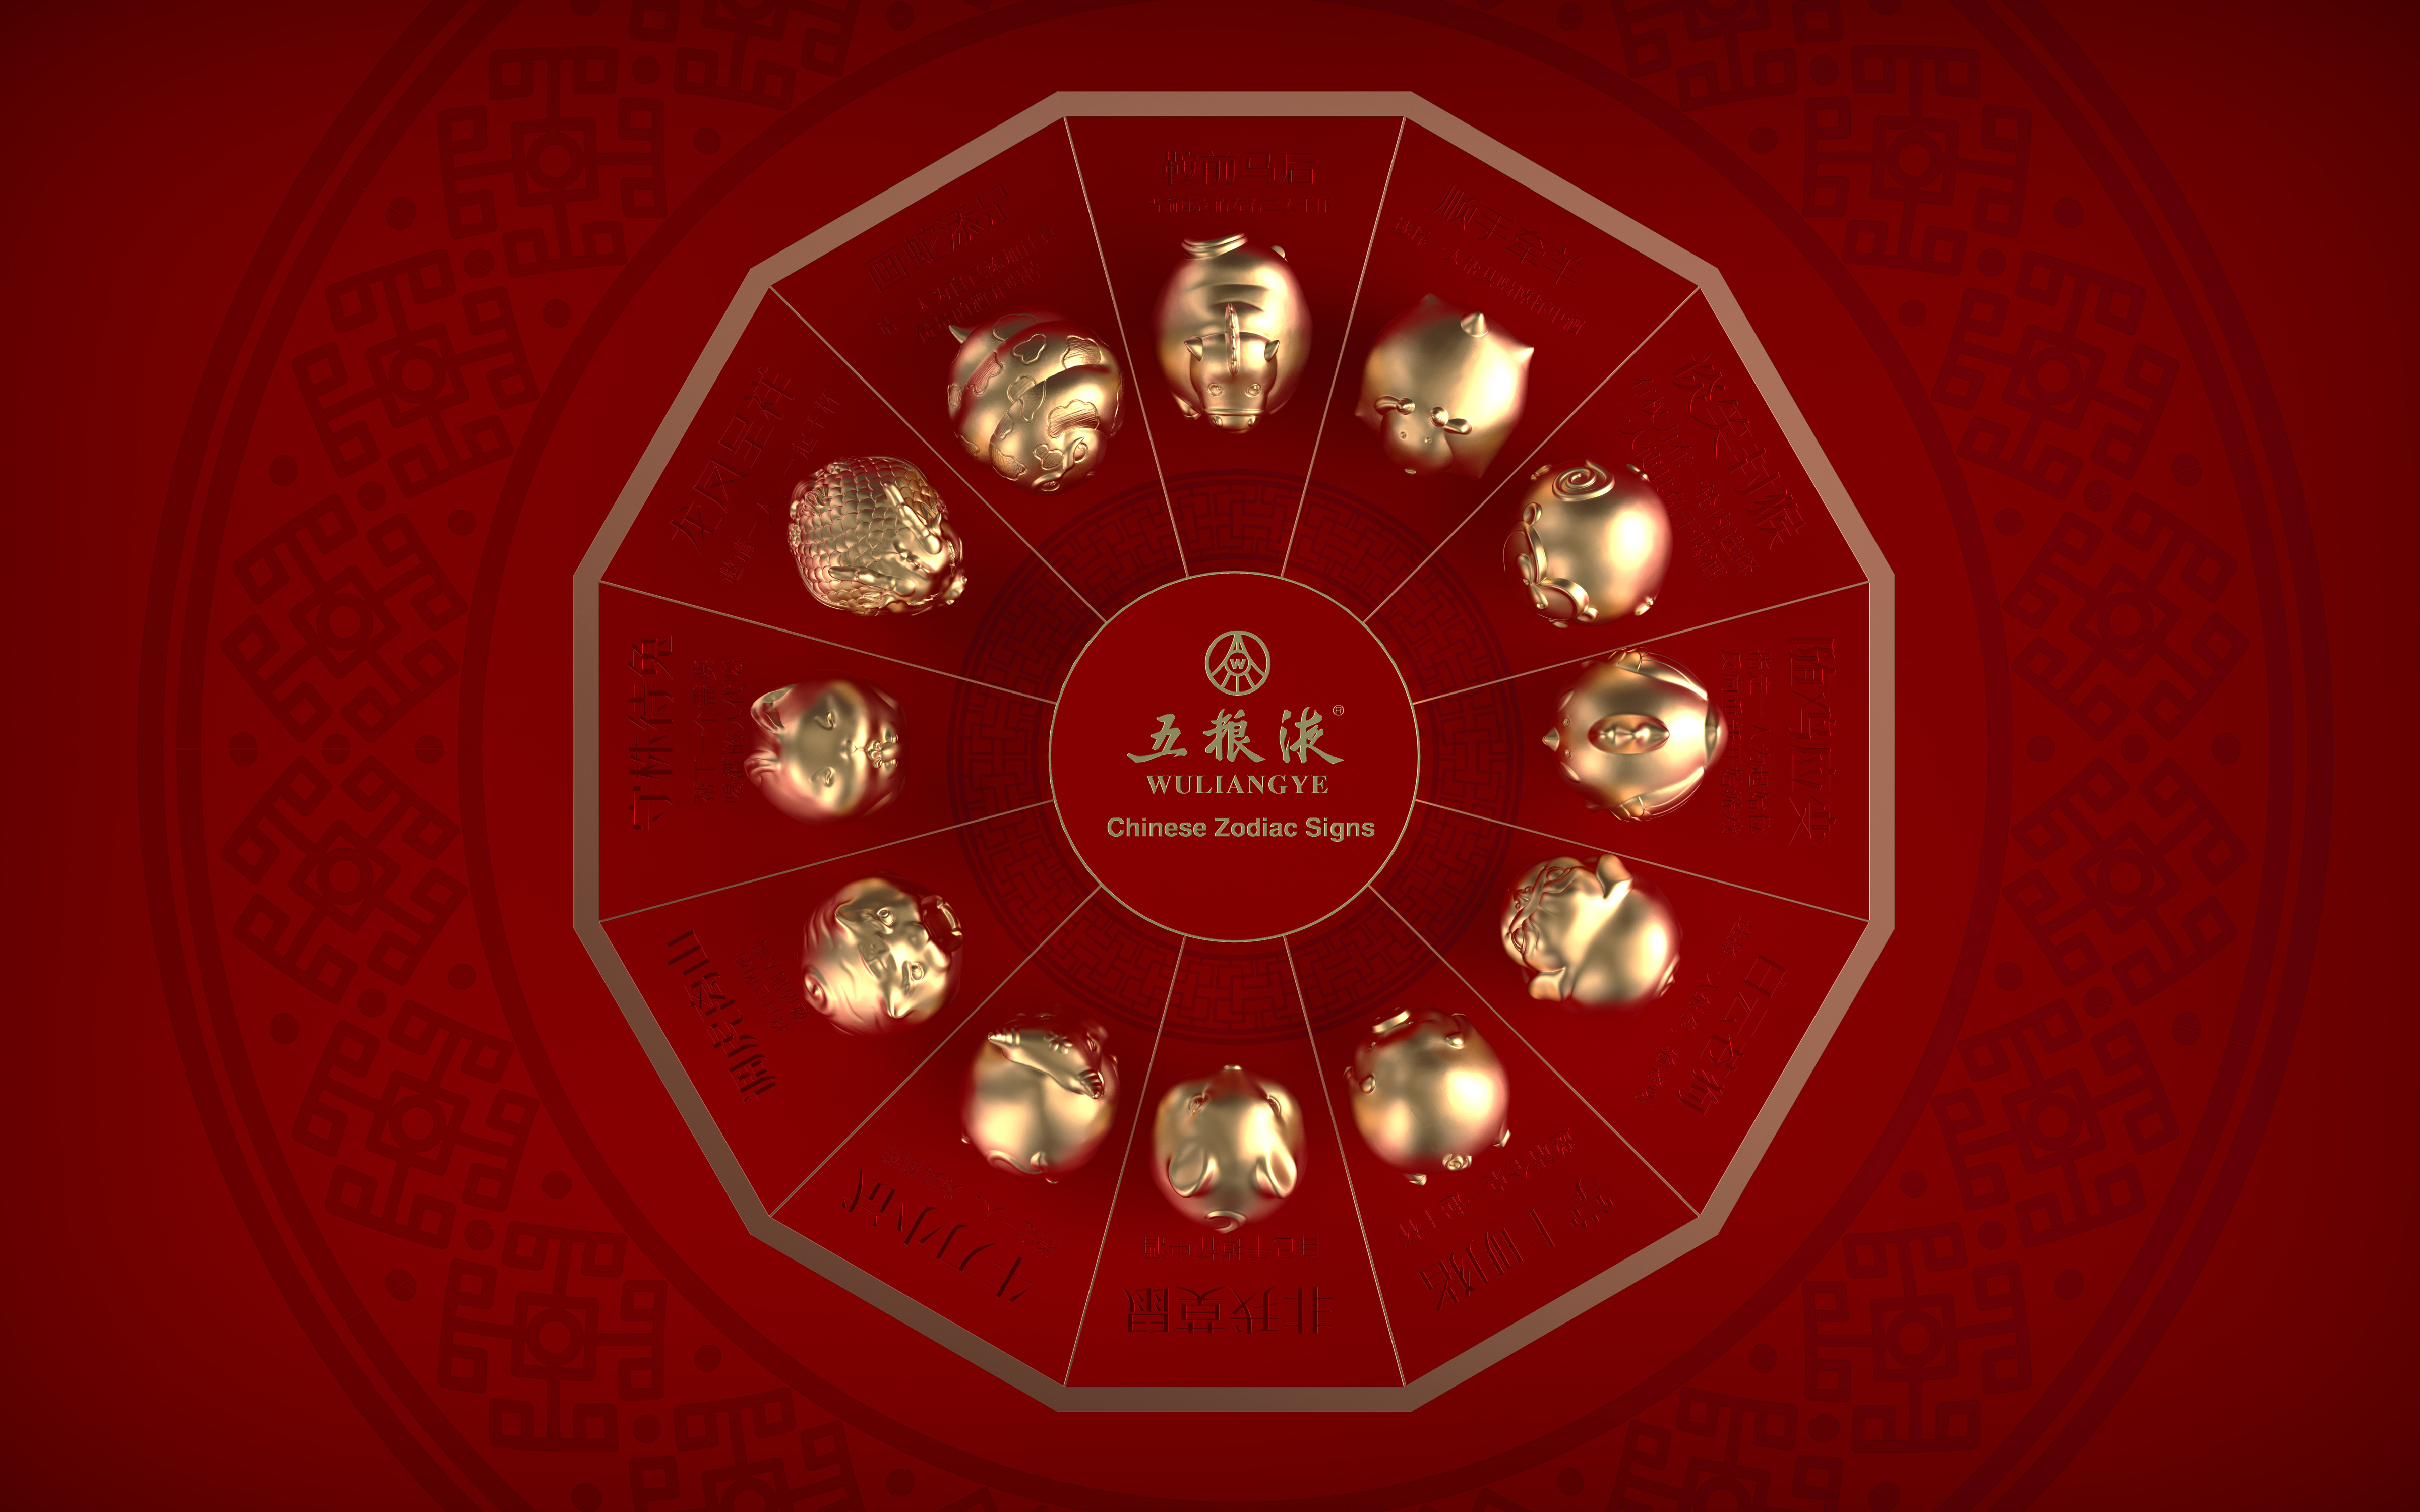 WULIANGYE BAIJIU: Chinese zodiac signs